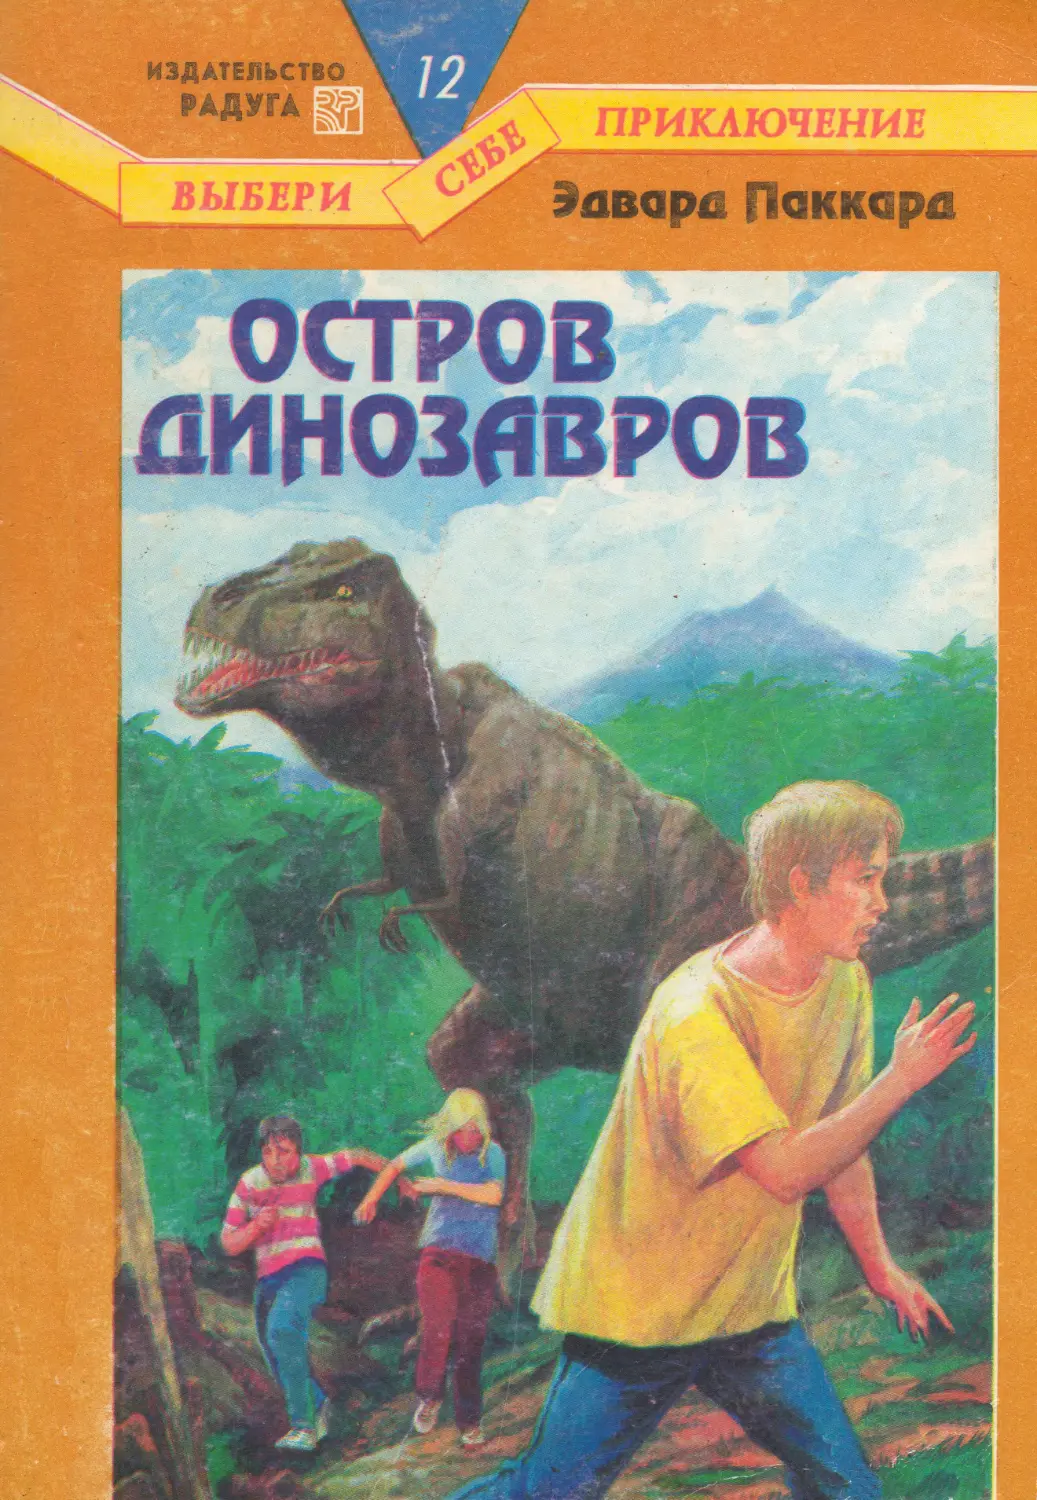 Читать книги приключение полной версии. Приключения динозавров книга. Остров динозавров книга. Выбери себе приключение книги. Книги про динозавров фантастика.